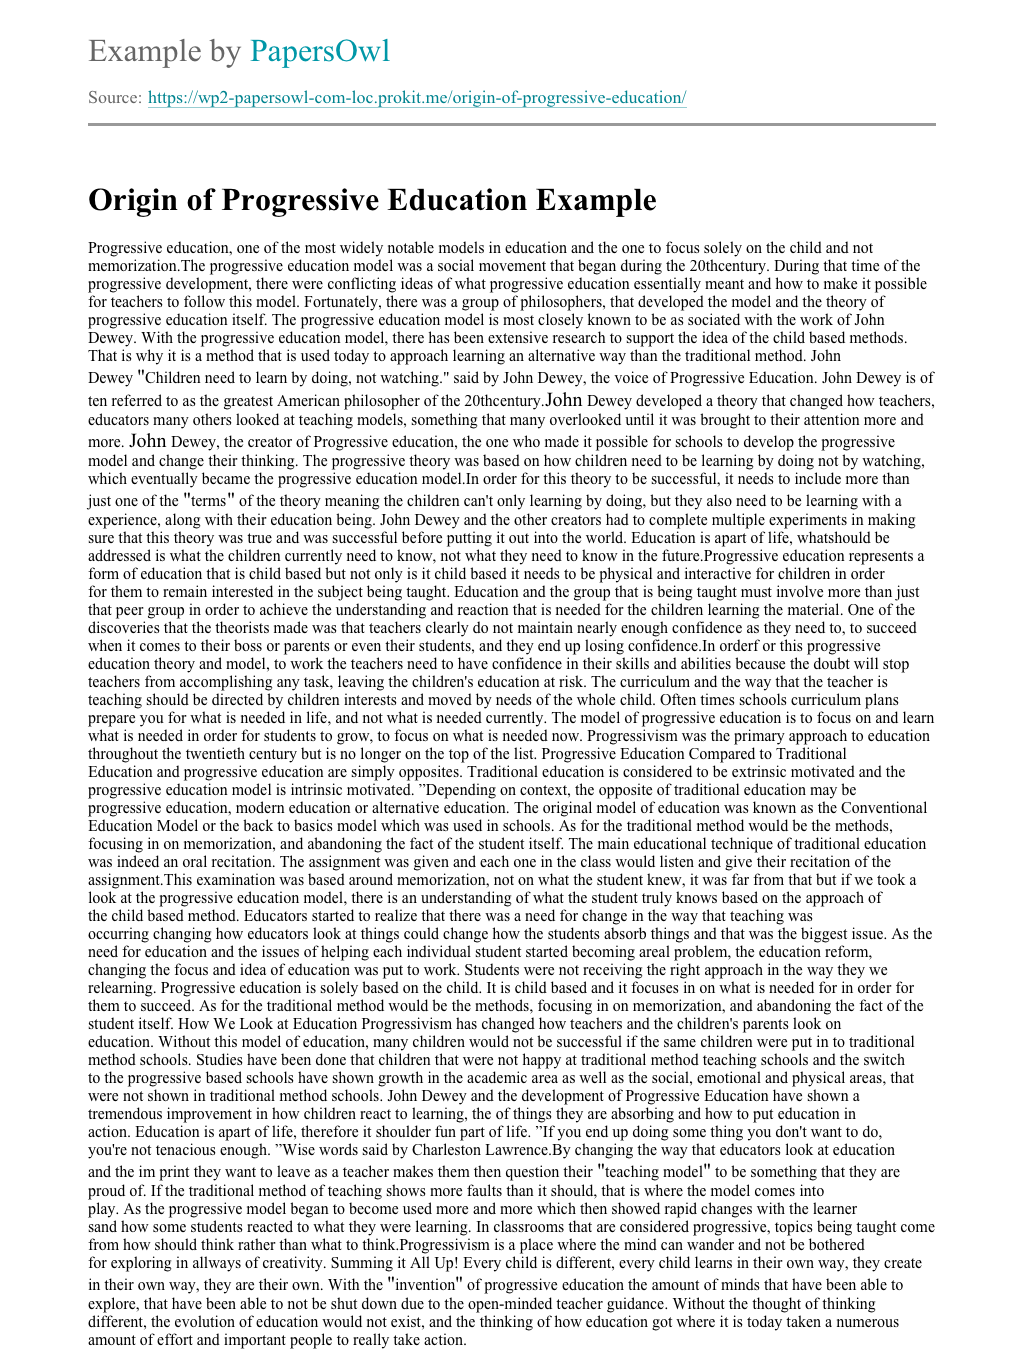 progressivism in education essay